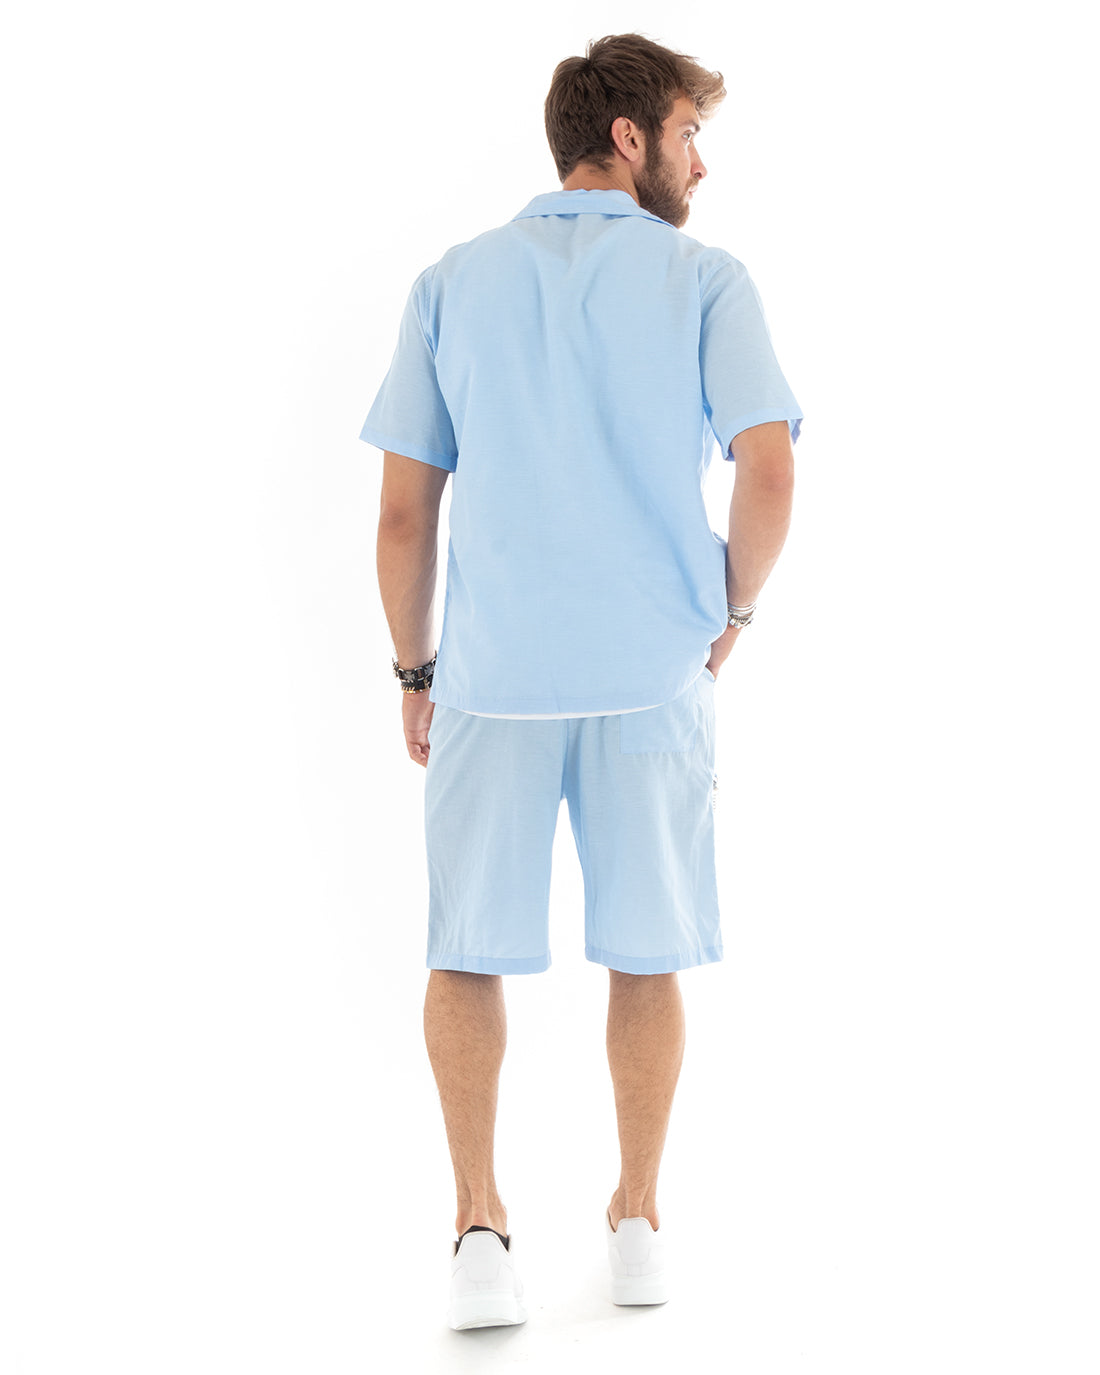 Completo Set Coordinato Uomo Viscosa Camicia Con Colletto Bermuda Outfit Celeste GIOSAL-OU2354A